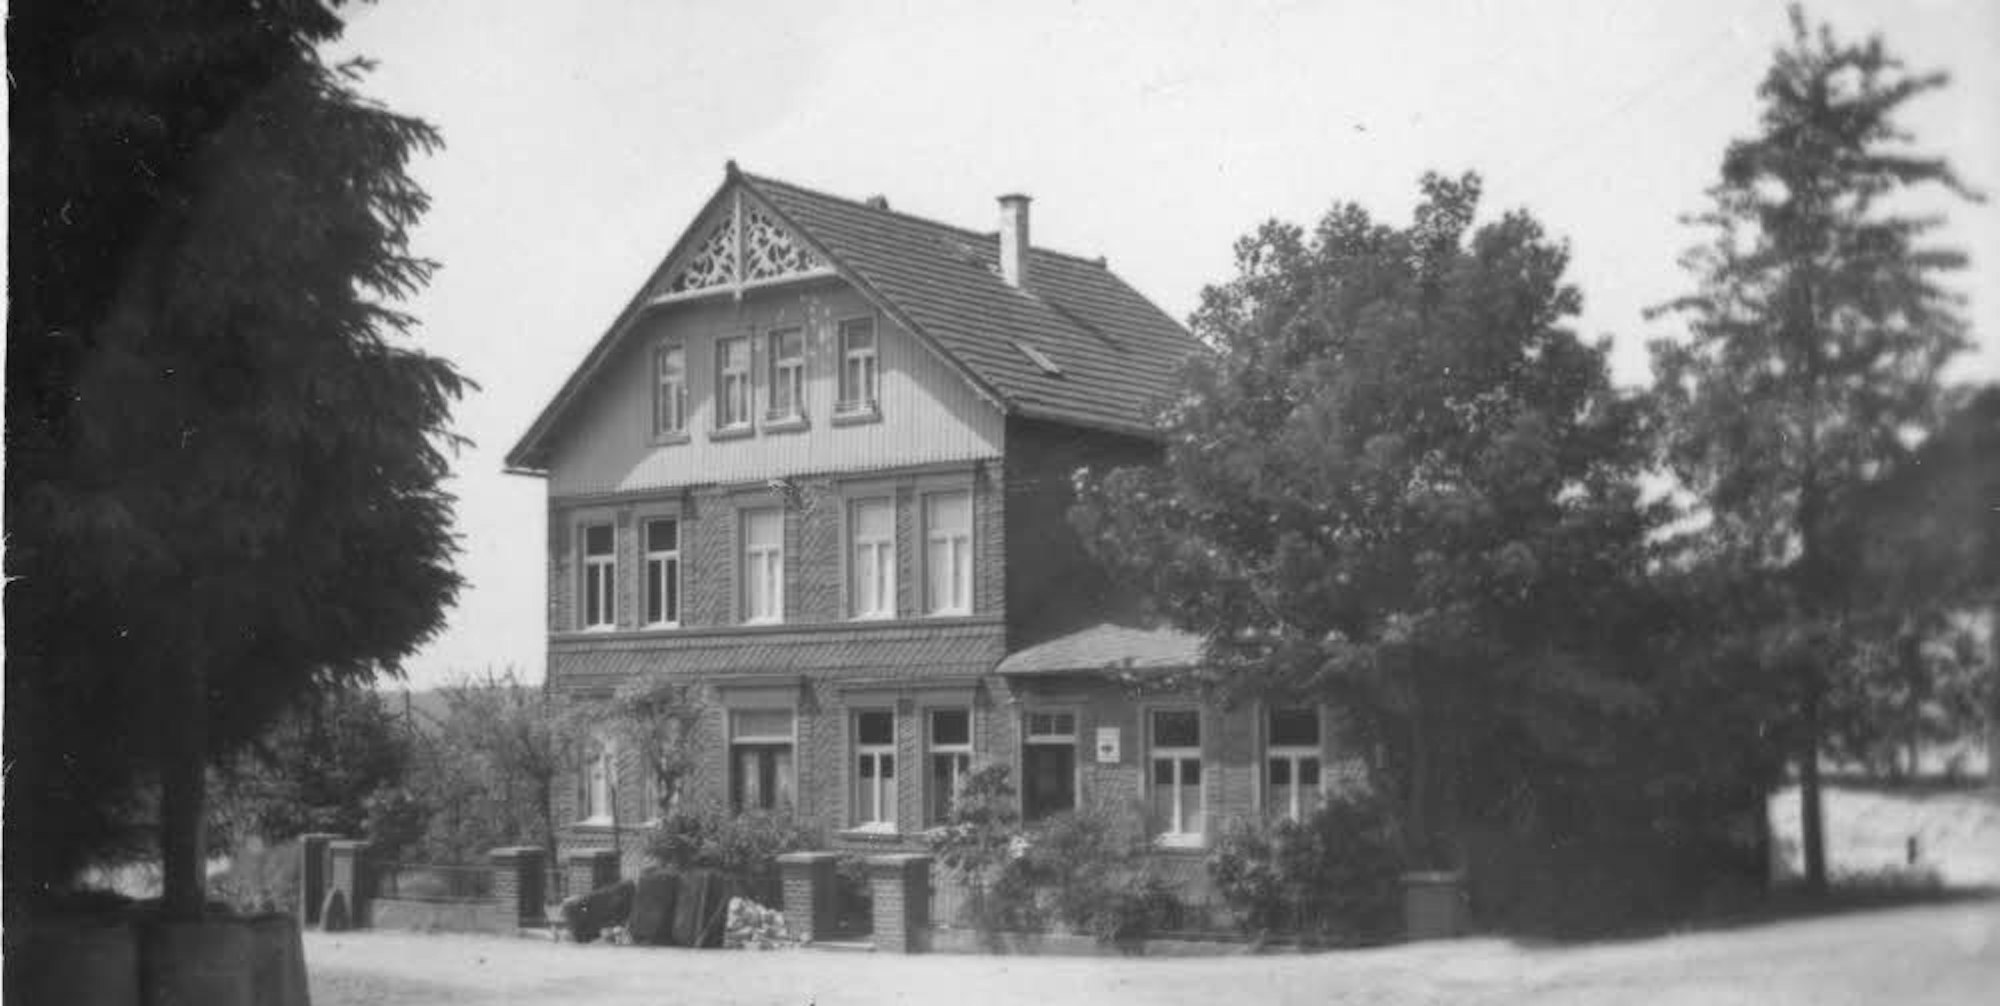 Das Rathaus in Lieberhausen: Um den Sitz der Verwaltung entbrannte ein Streit, bei dem die Wiedenester vor drastischen Mitteln nicht zurückschreckten.